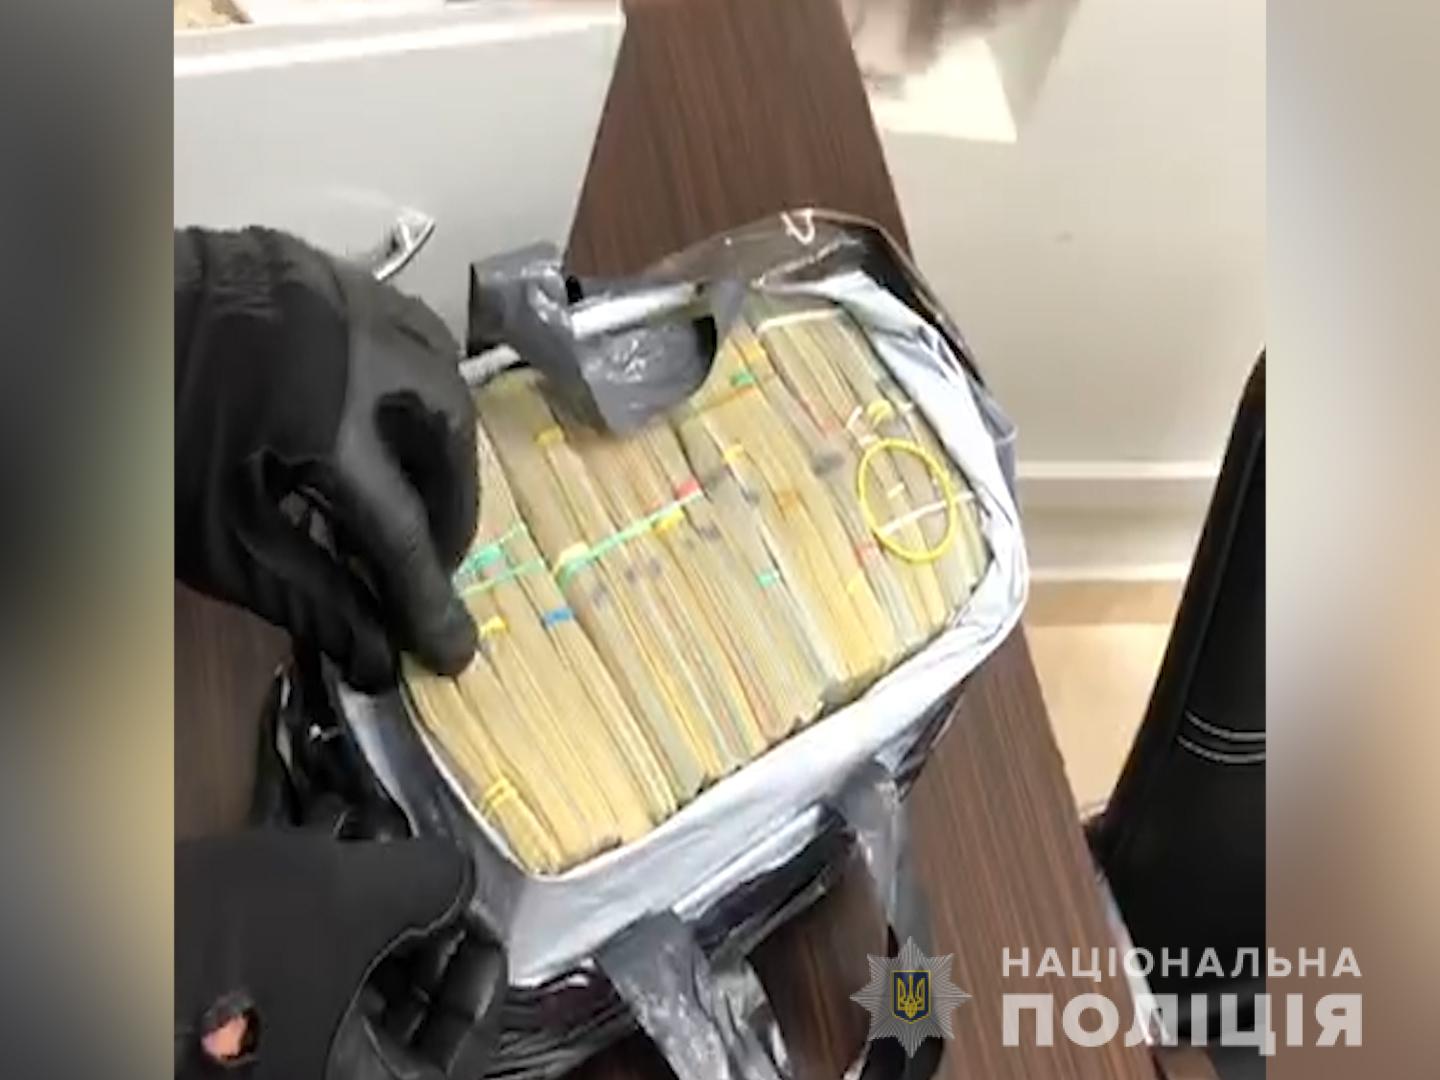 Сотрудники Нацполиции изъяли в Киеве 400 тысяч долларов “воровского общака” (фото, видео)